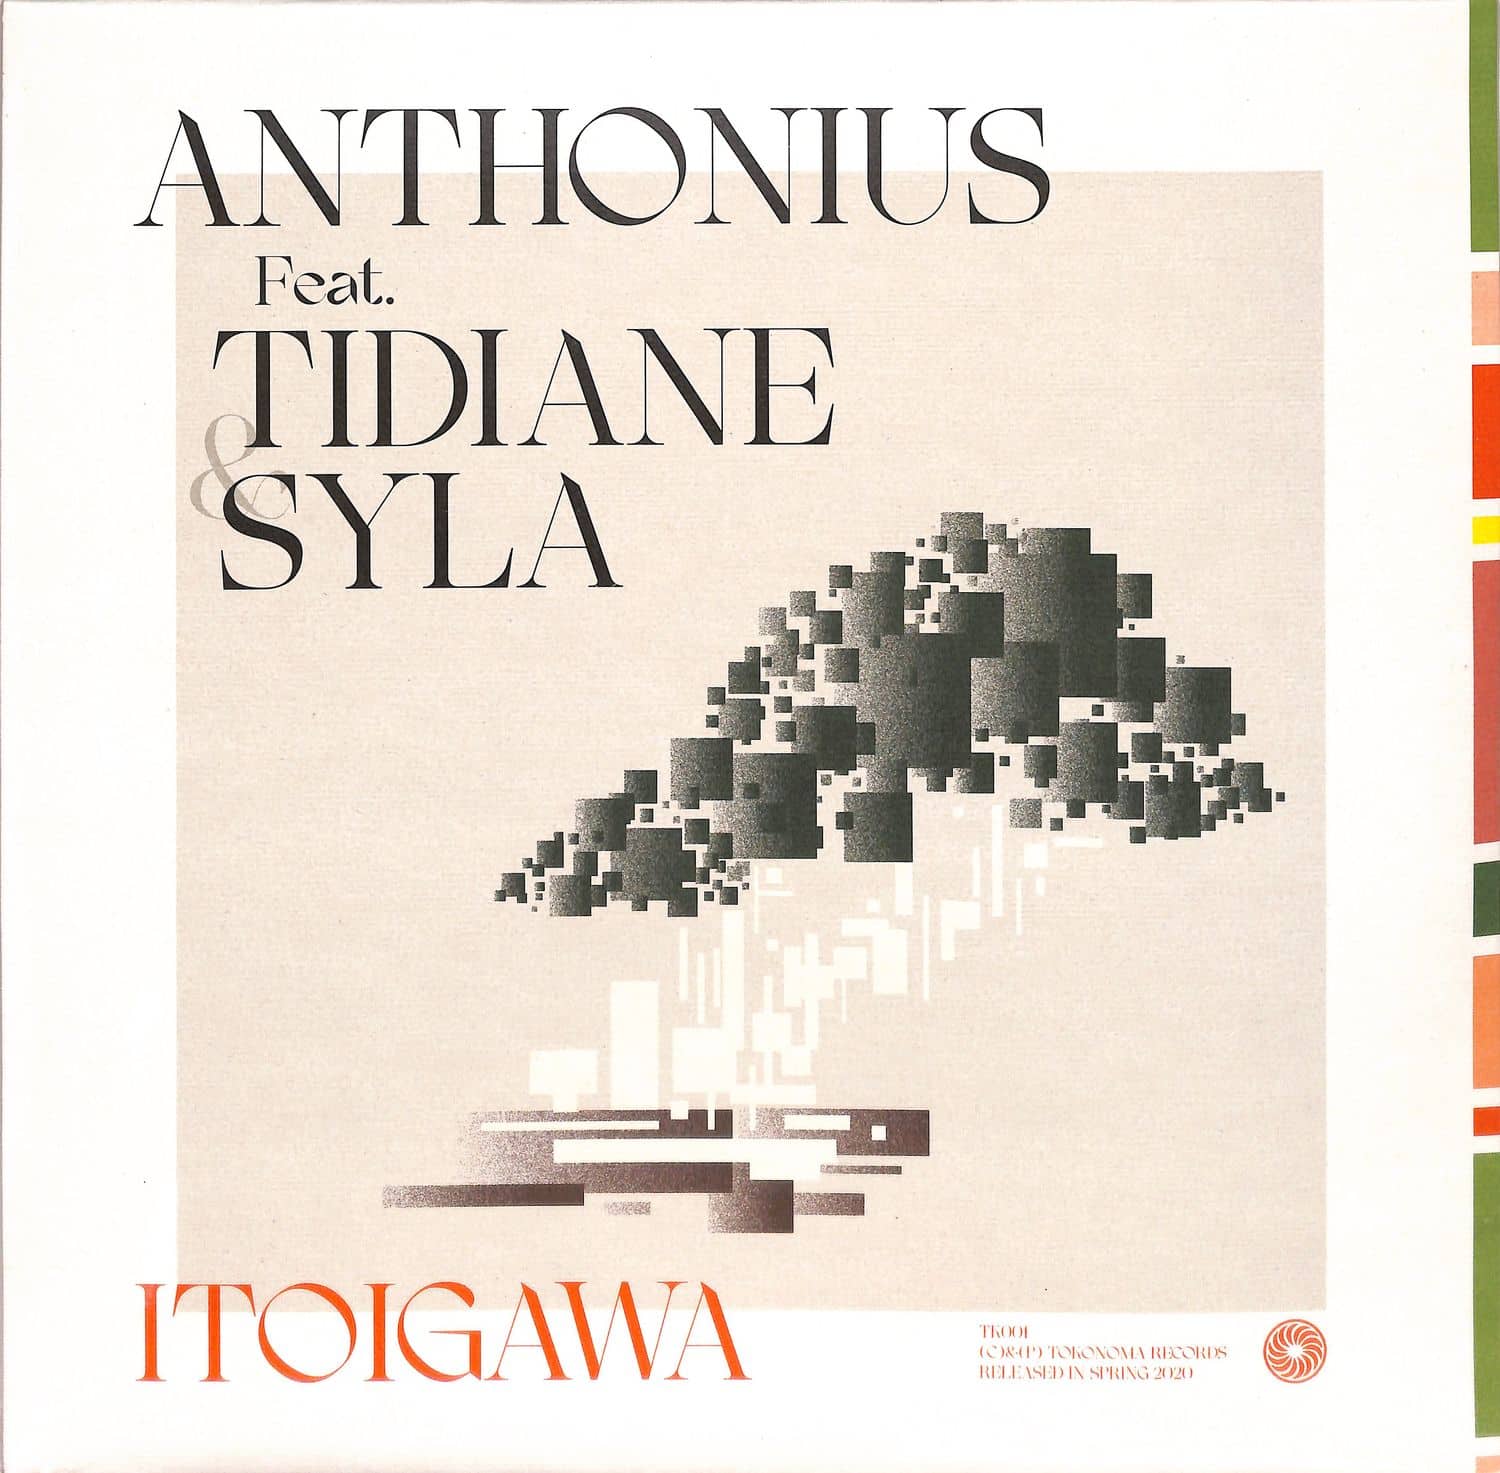 Anthonius feat. Tidiane & Syla - ITOIGAWA 